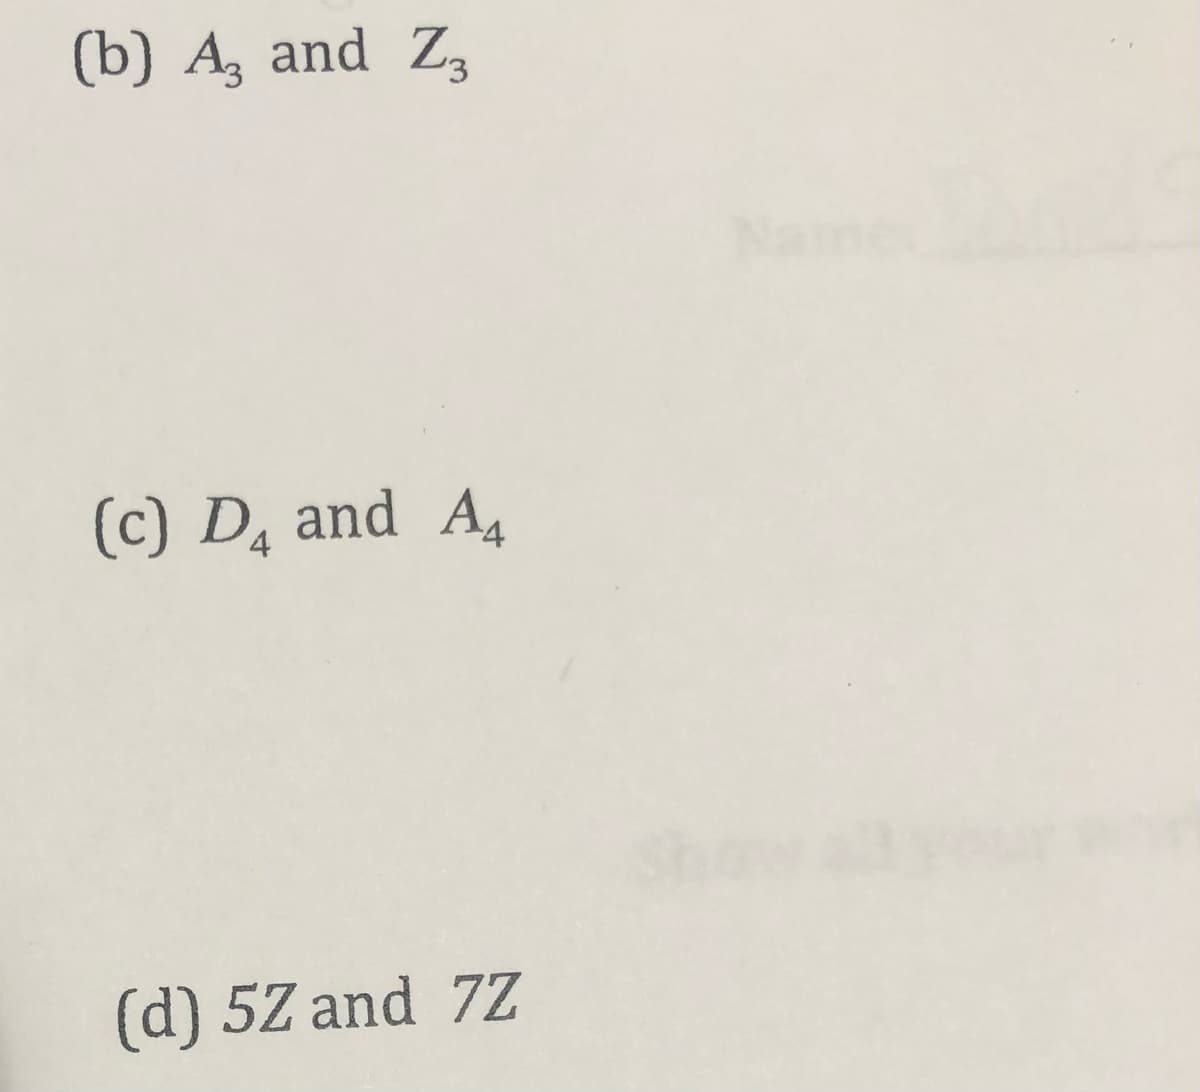 (b) A, and Z,
Name
(c) D, and A
Show
(d) 5Z and 7Z
